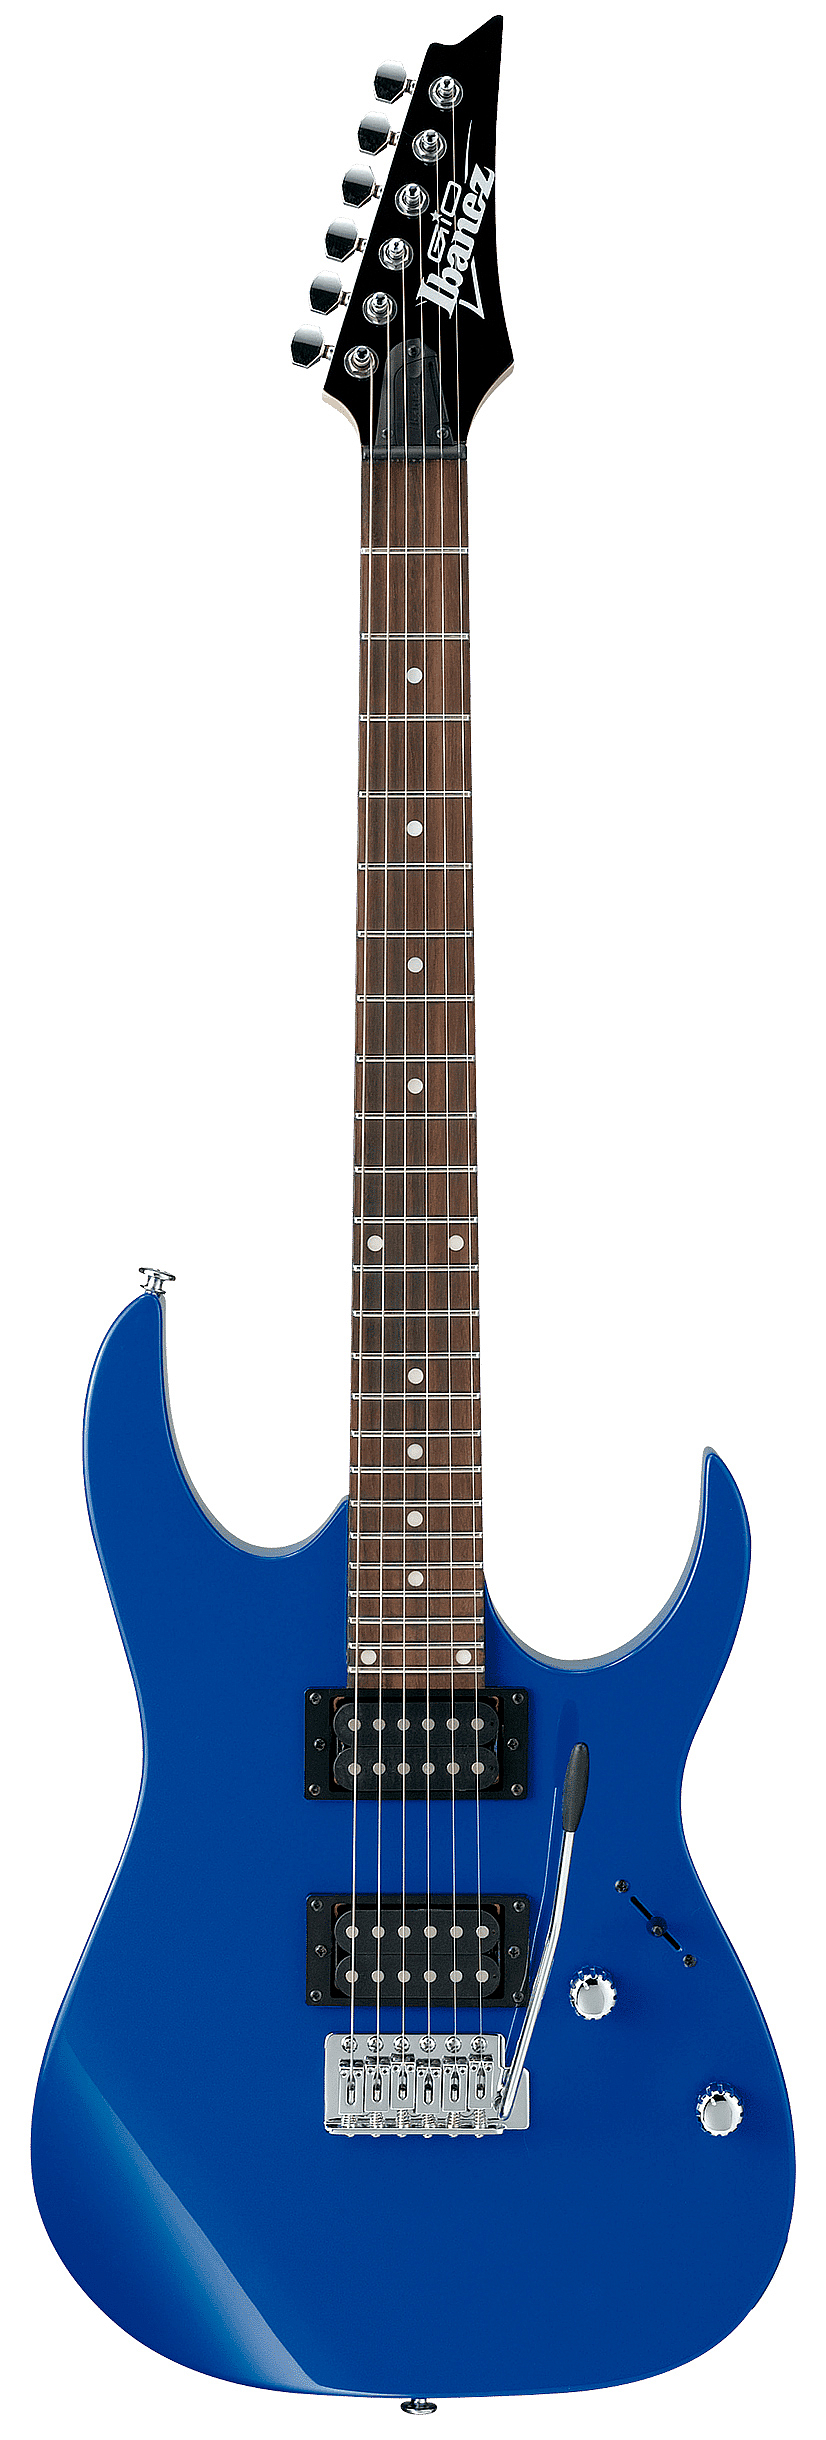 Ibanez IJRG200U BLUE New Jumpstart набор начинающего гитариста | Продукция IBANEZ